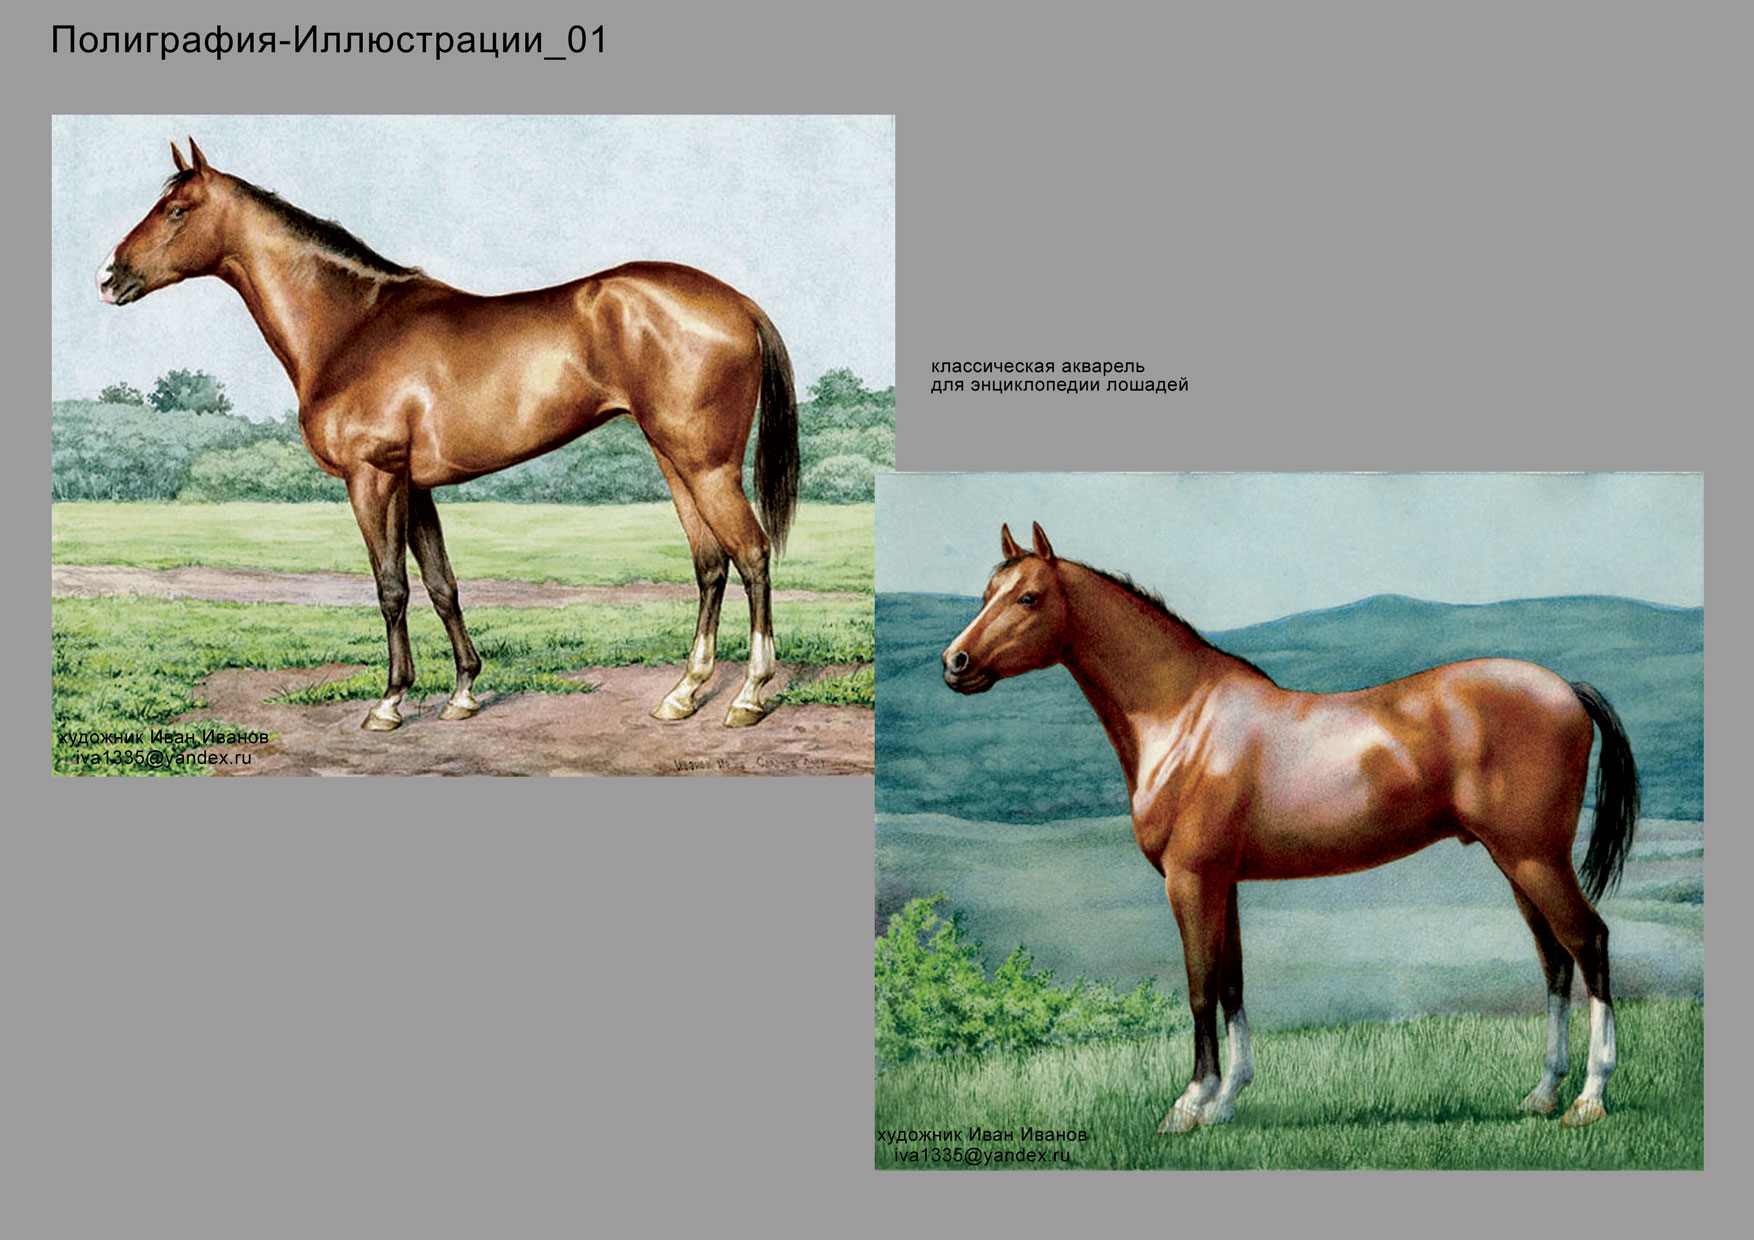 иллюстрации для энциклопедий лошадей